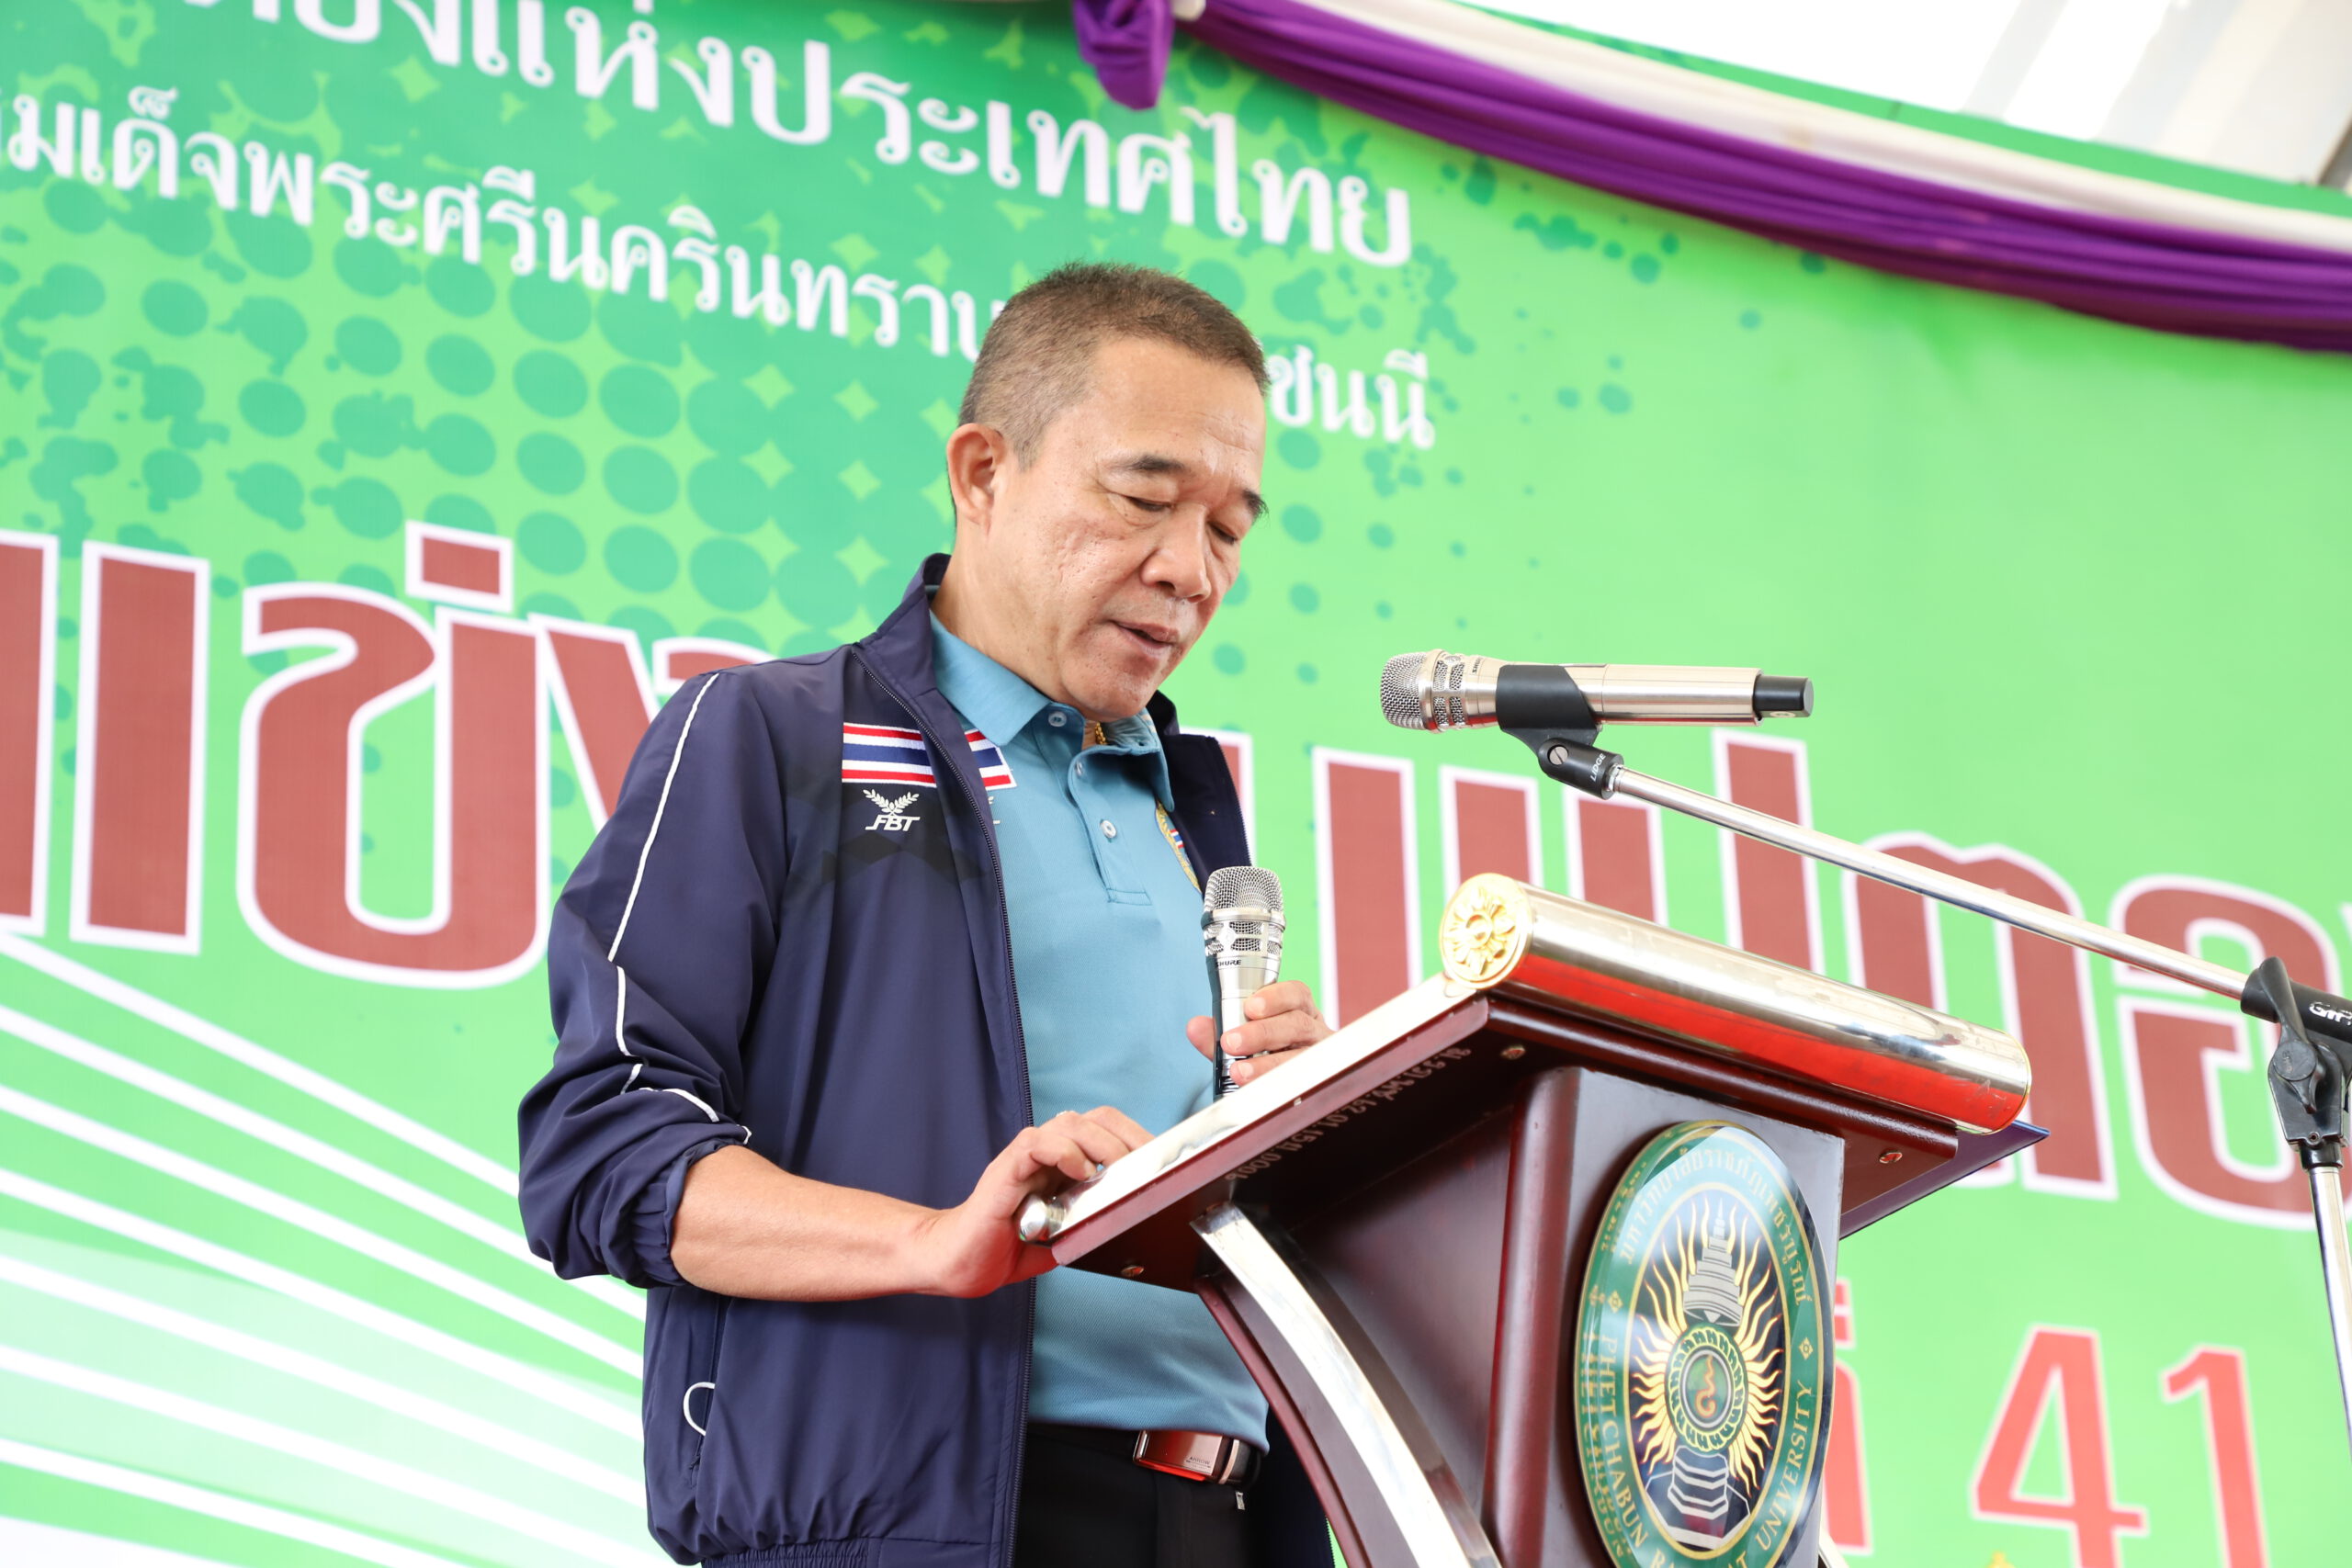 จังหวัดเพชรบูรณ์ เปิดการแข่งขันกีฬาเปตองชิงชนะเลิศแห่งประเทศไทย ครั้งที่ 41